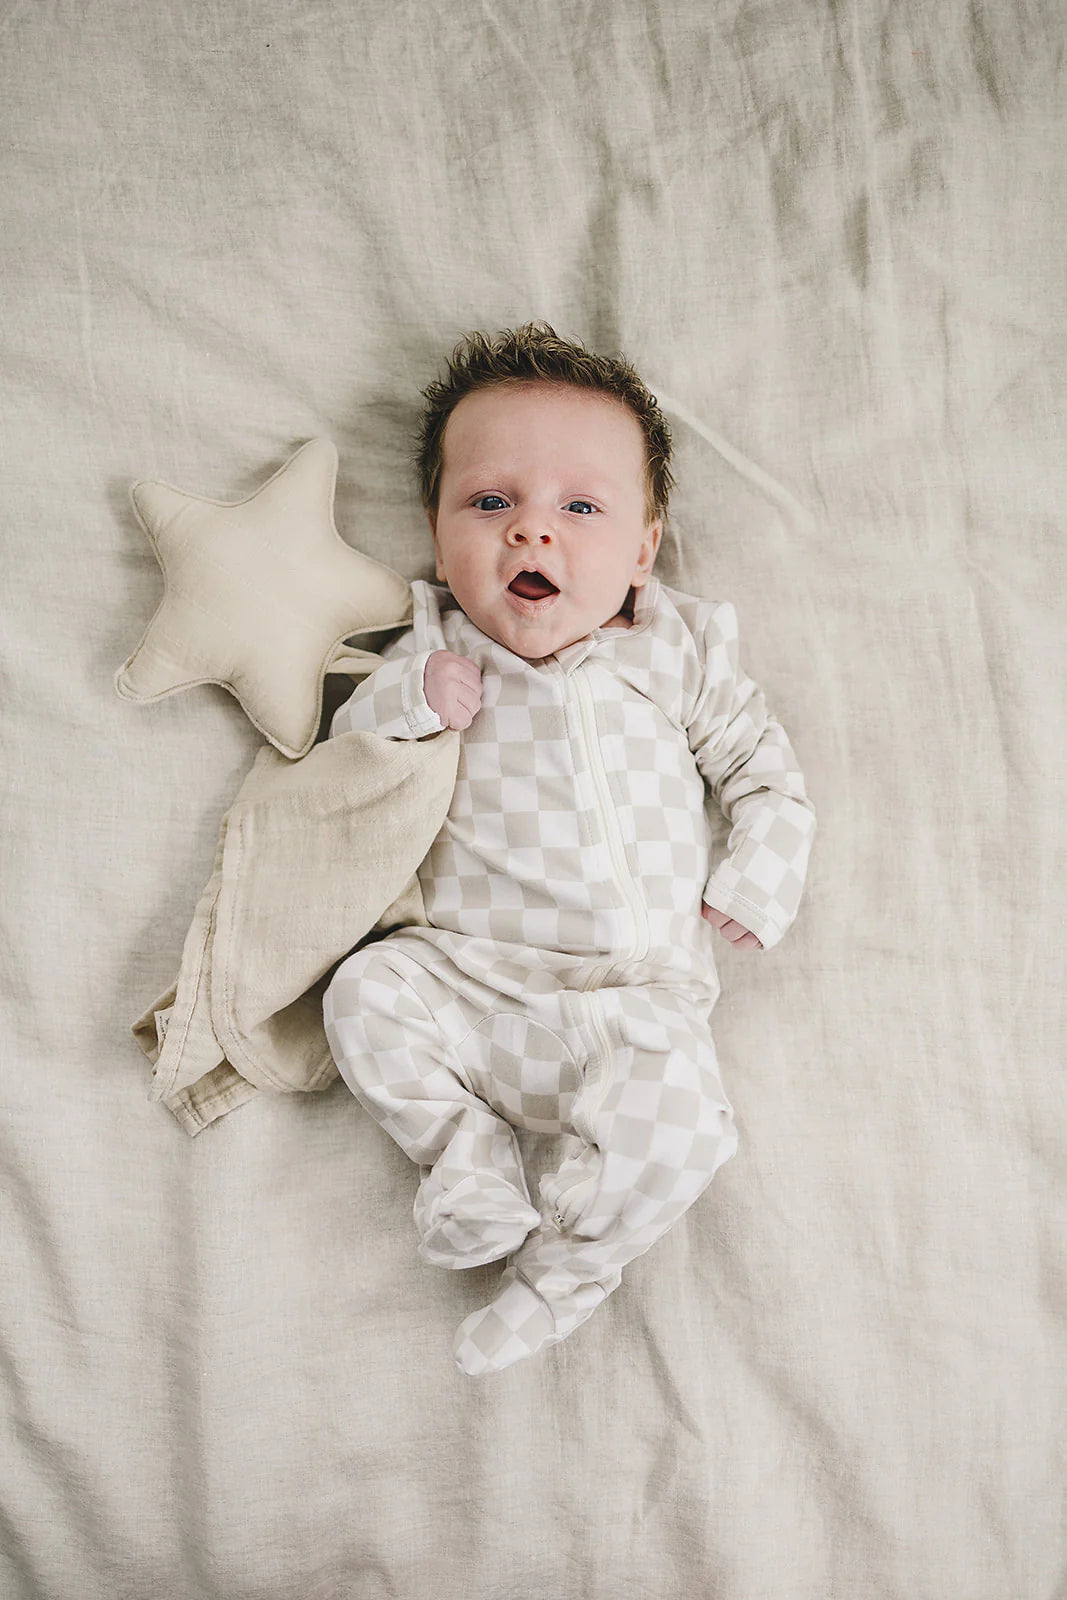 Baby Checkered Zipper Pajama (Newborn -24m) - 2 Colors